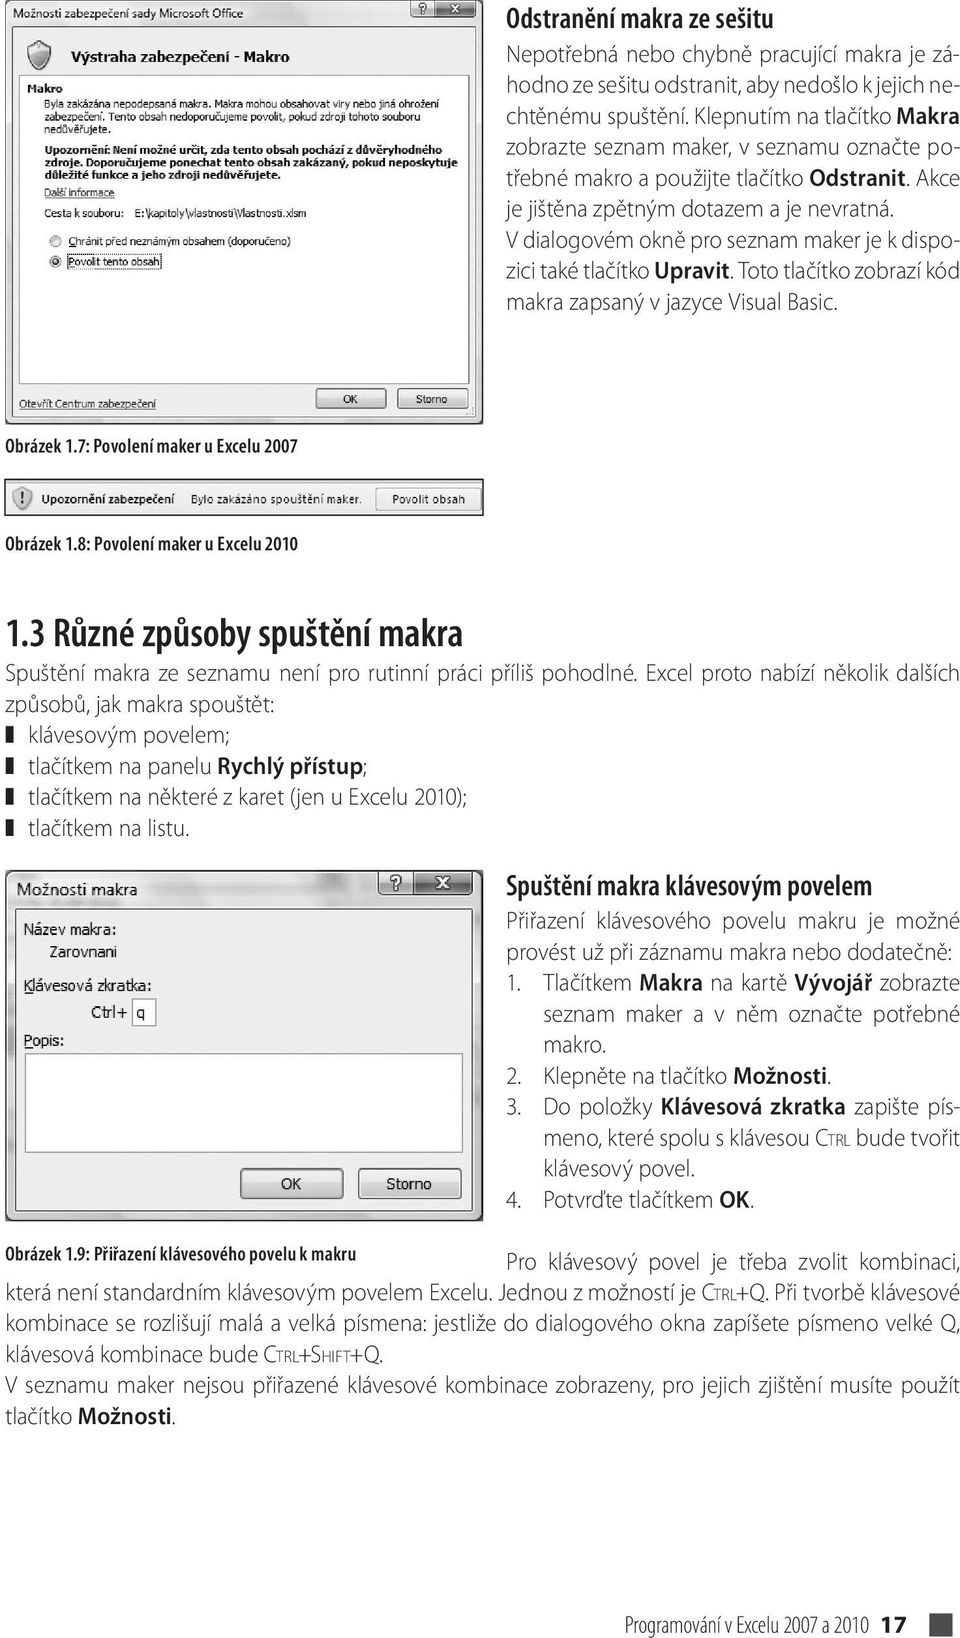 V dialogovém okně pro seznam maker je k dispozici také tlačítko Upravit. Toto tlačítko zobrazí kód makra zapsaný v jazyce Visual Basic. Obrázek 1.7: Povolení maker u Excelu 2007 Obrázek 1.